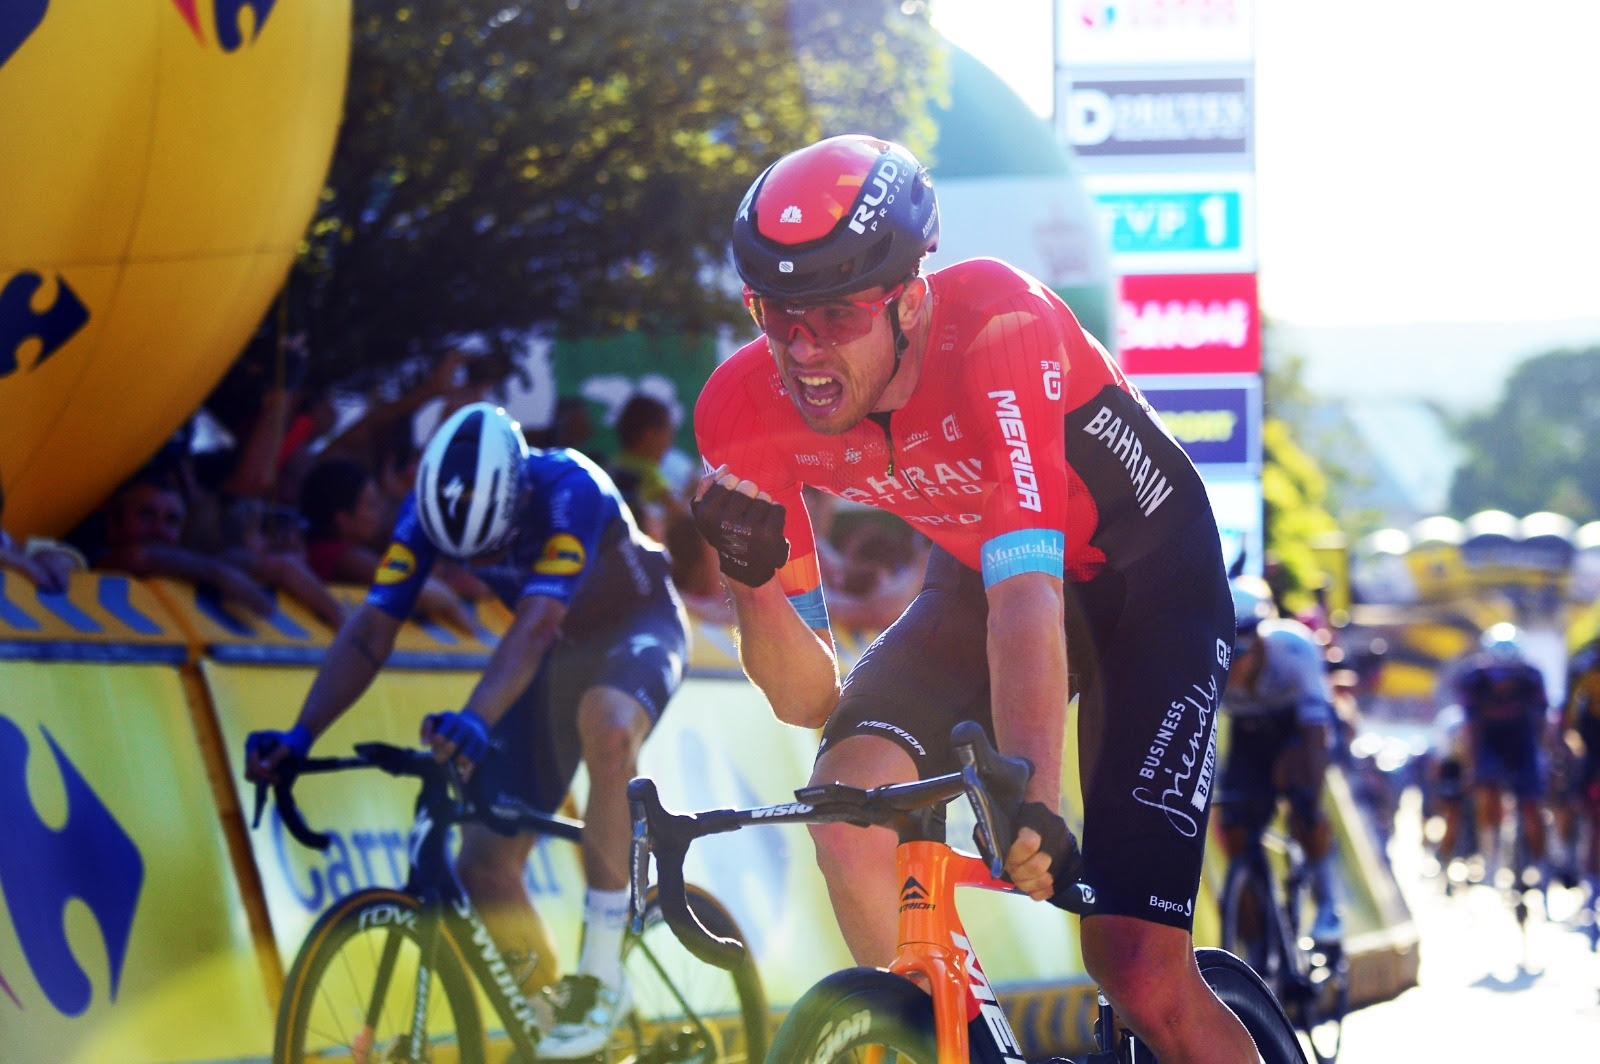 Phil Bauhaus vince la prima tappa del Tour de Pologne 2021